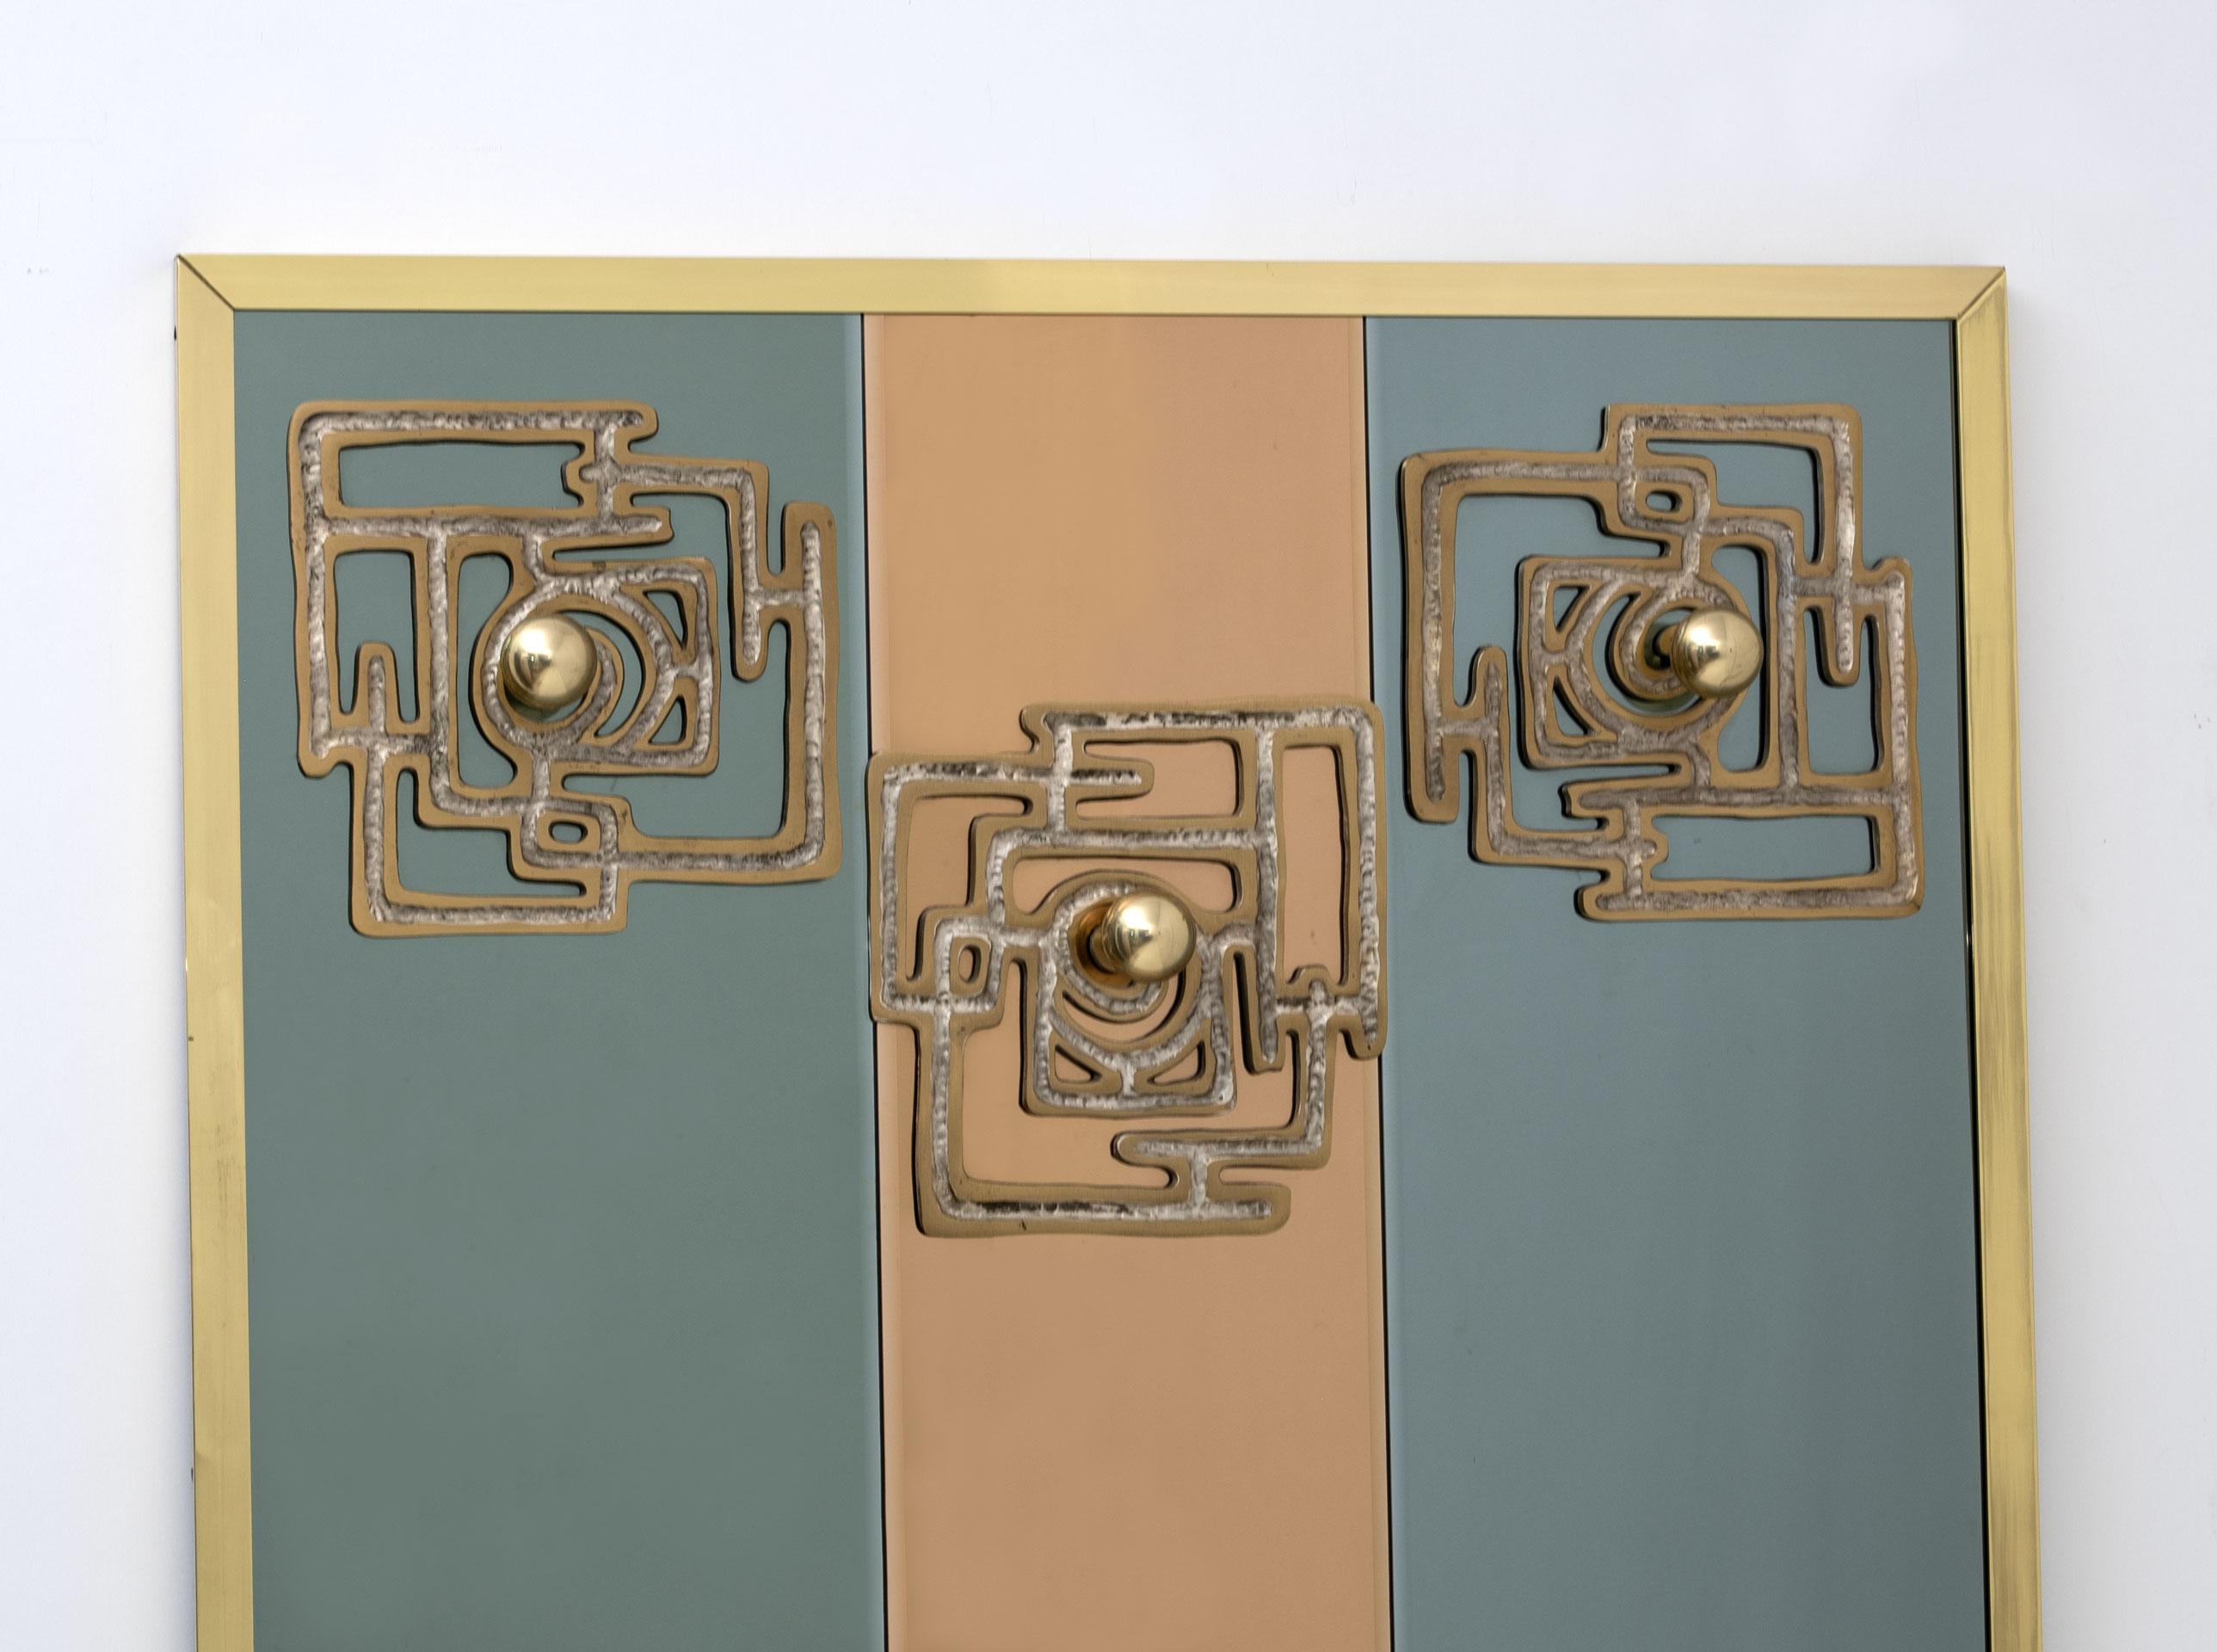 Entworfen von Luciano Frigerio ist dieser reizvolle und einzigartige verspiegelte Kleiderbügel in drei Spiegelteile in Roségold und Grau unterteilt, die mit 3 skulpturalen Bronzetafeln mit Messingkugeln versehen sind.